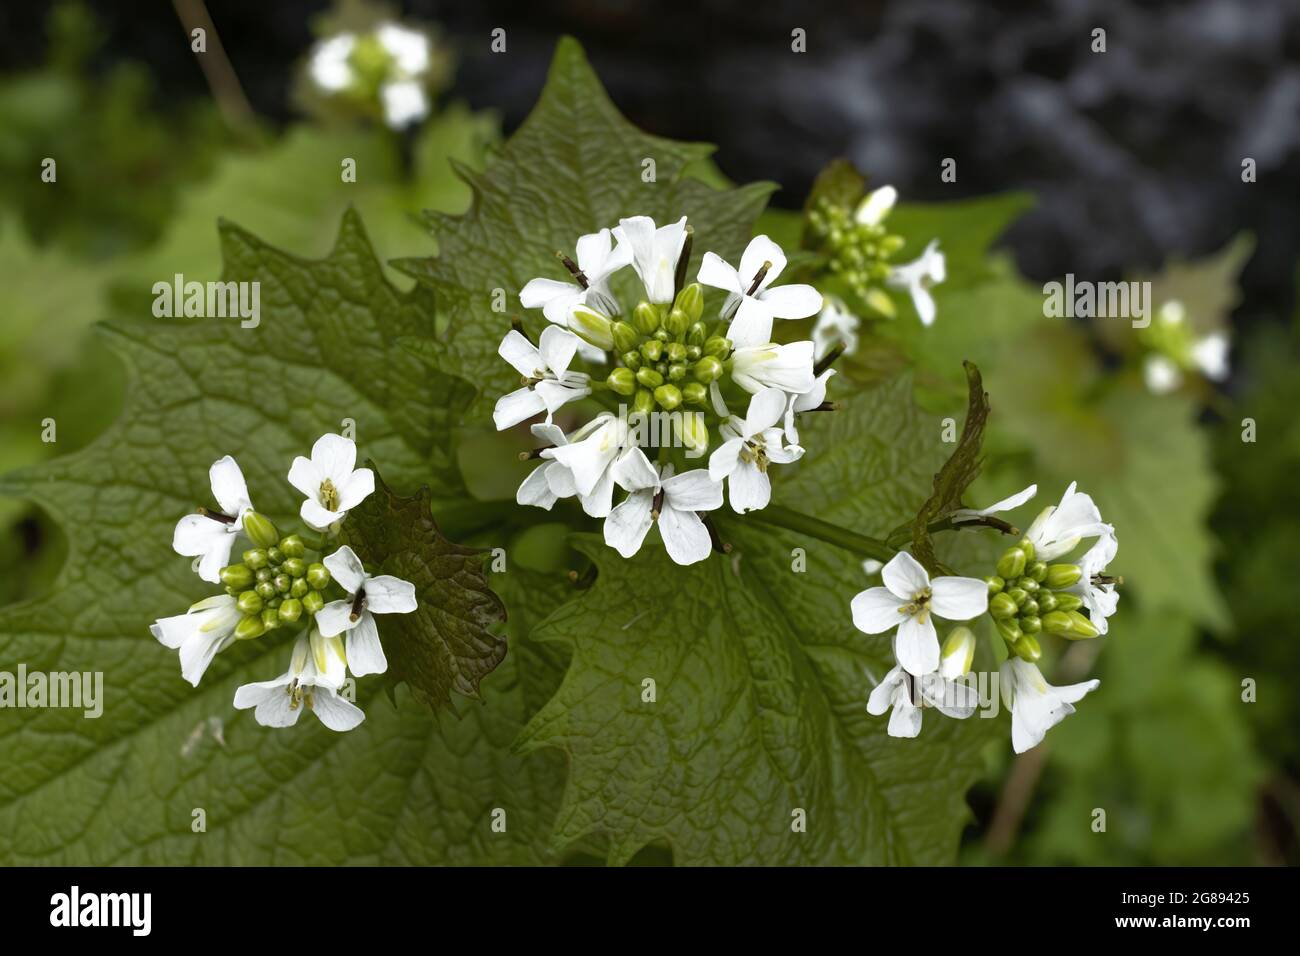 Aglio senape fiori, nome scientifico alliaria petiolata nel loro ambiente naturale con bella sfocatura Foto Stock